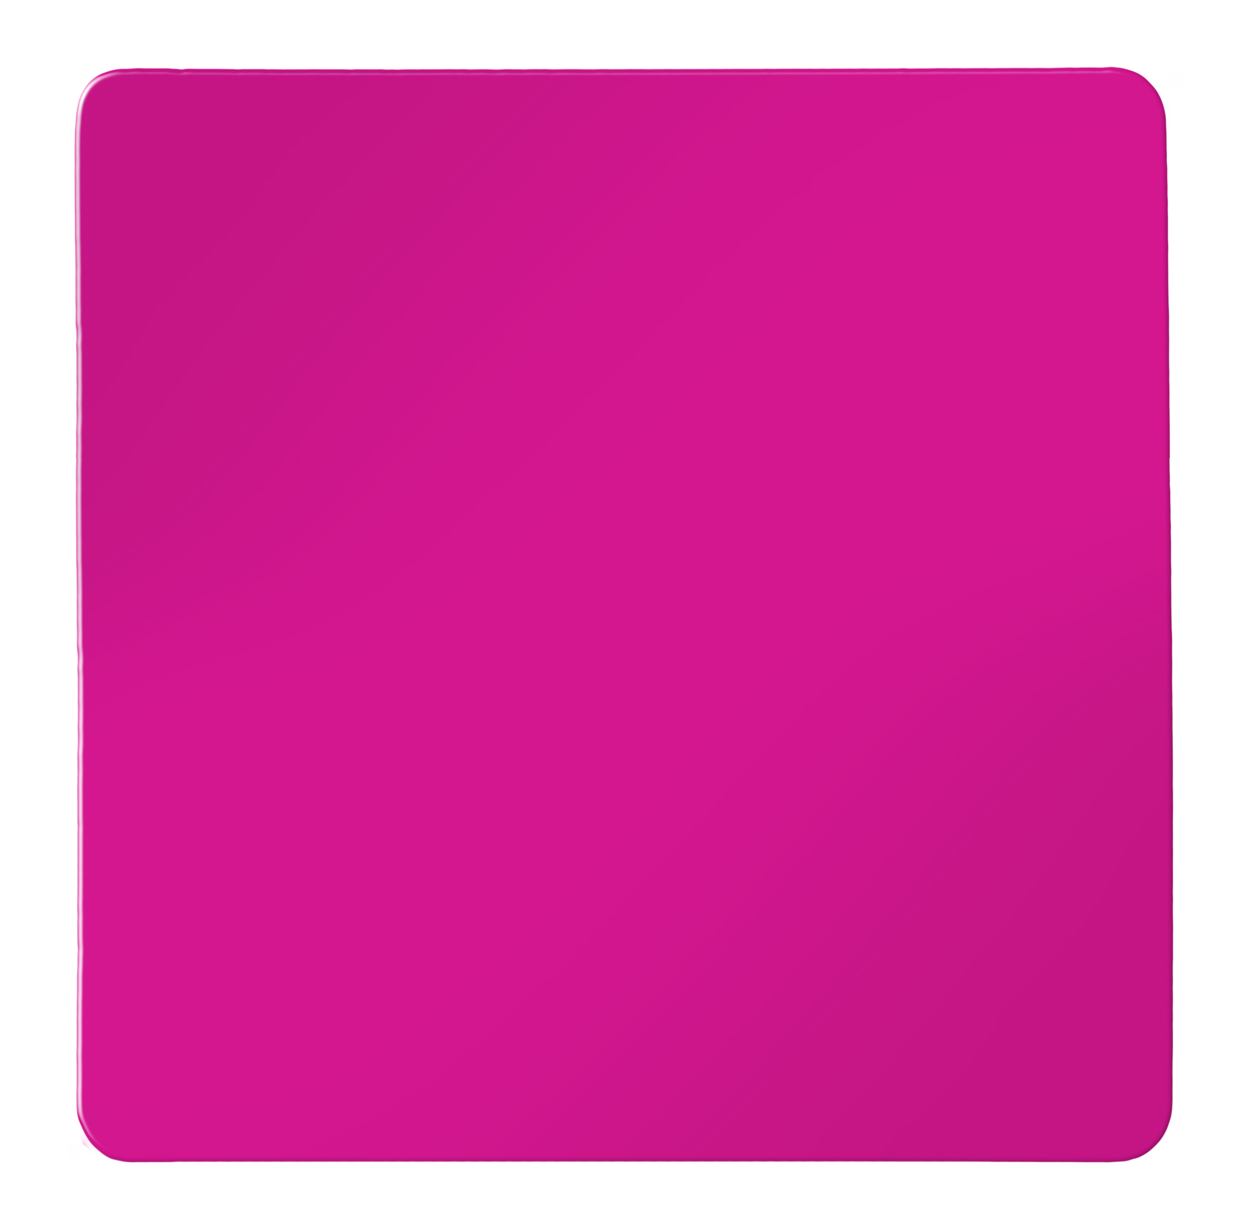 Оранжевый цвет квадрат. Флуоресцентный розовый. Флуоресцентный розовый цвет. Розовый квадратик. Розовый цвет квадрат.